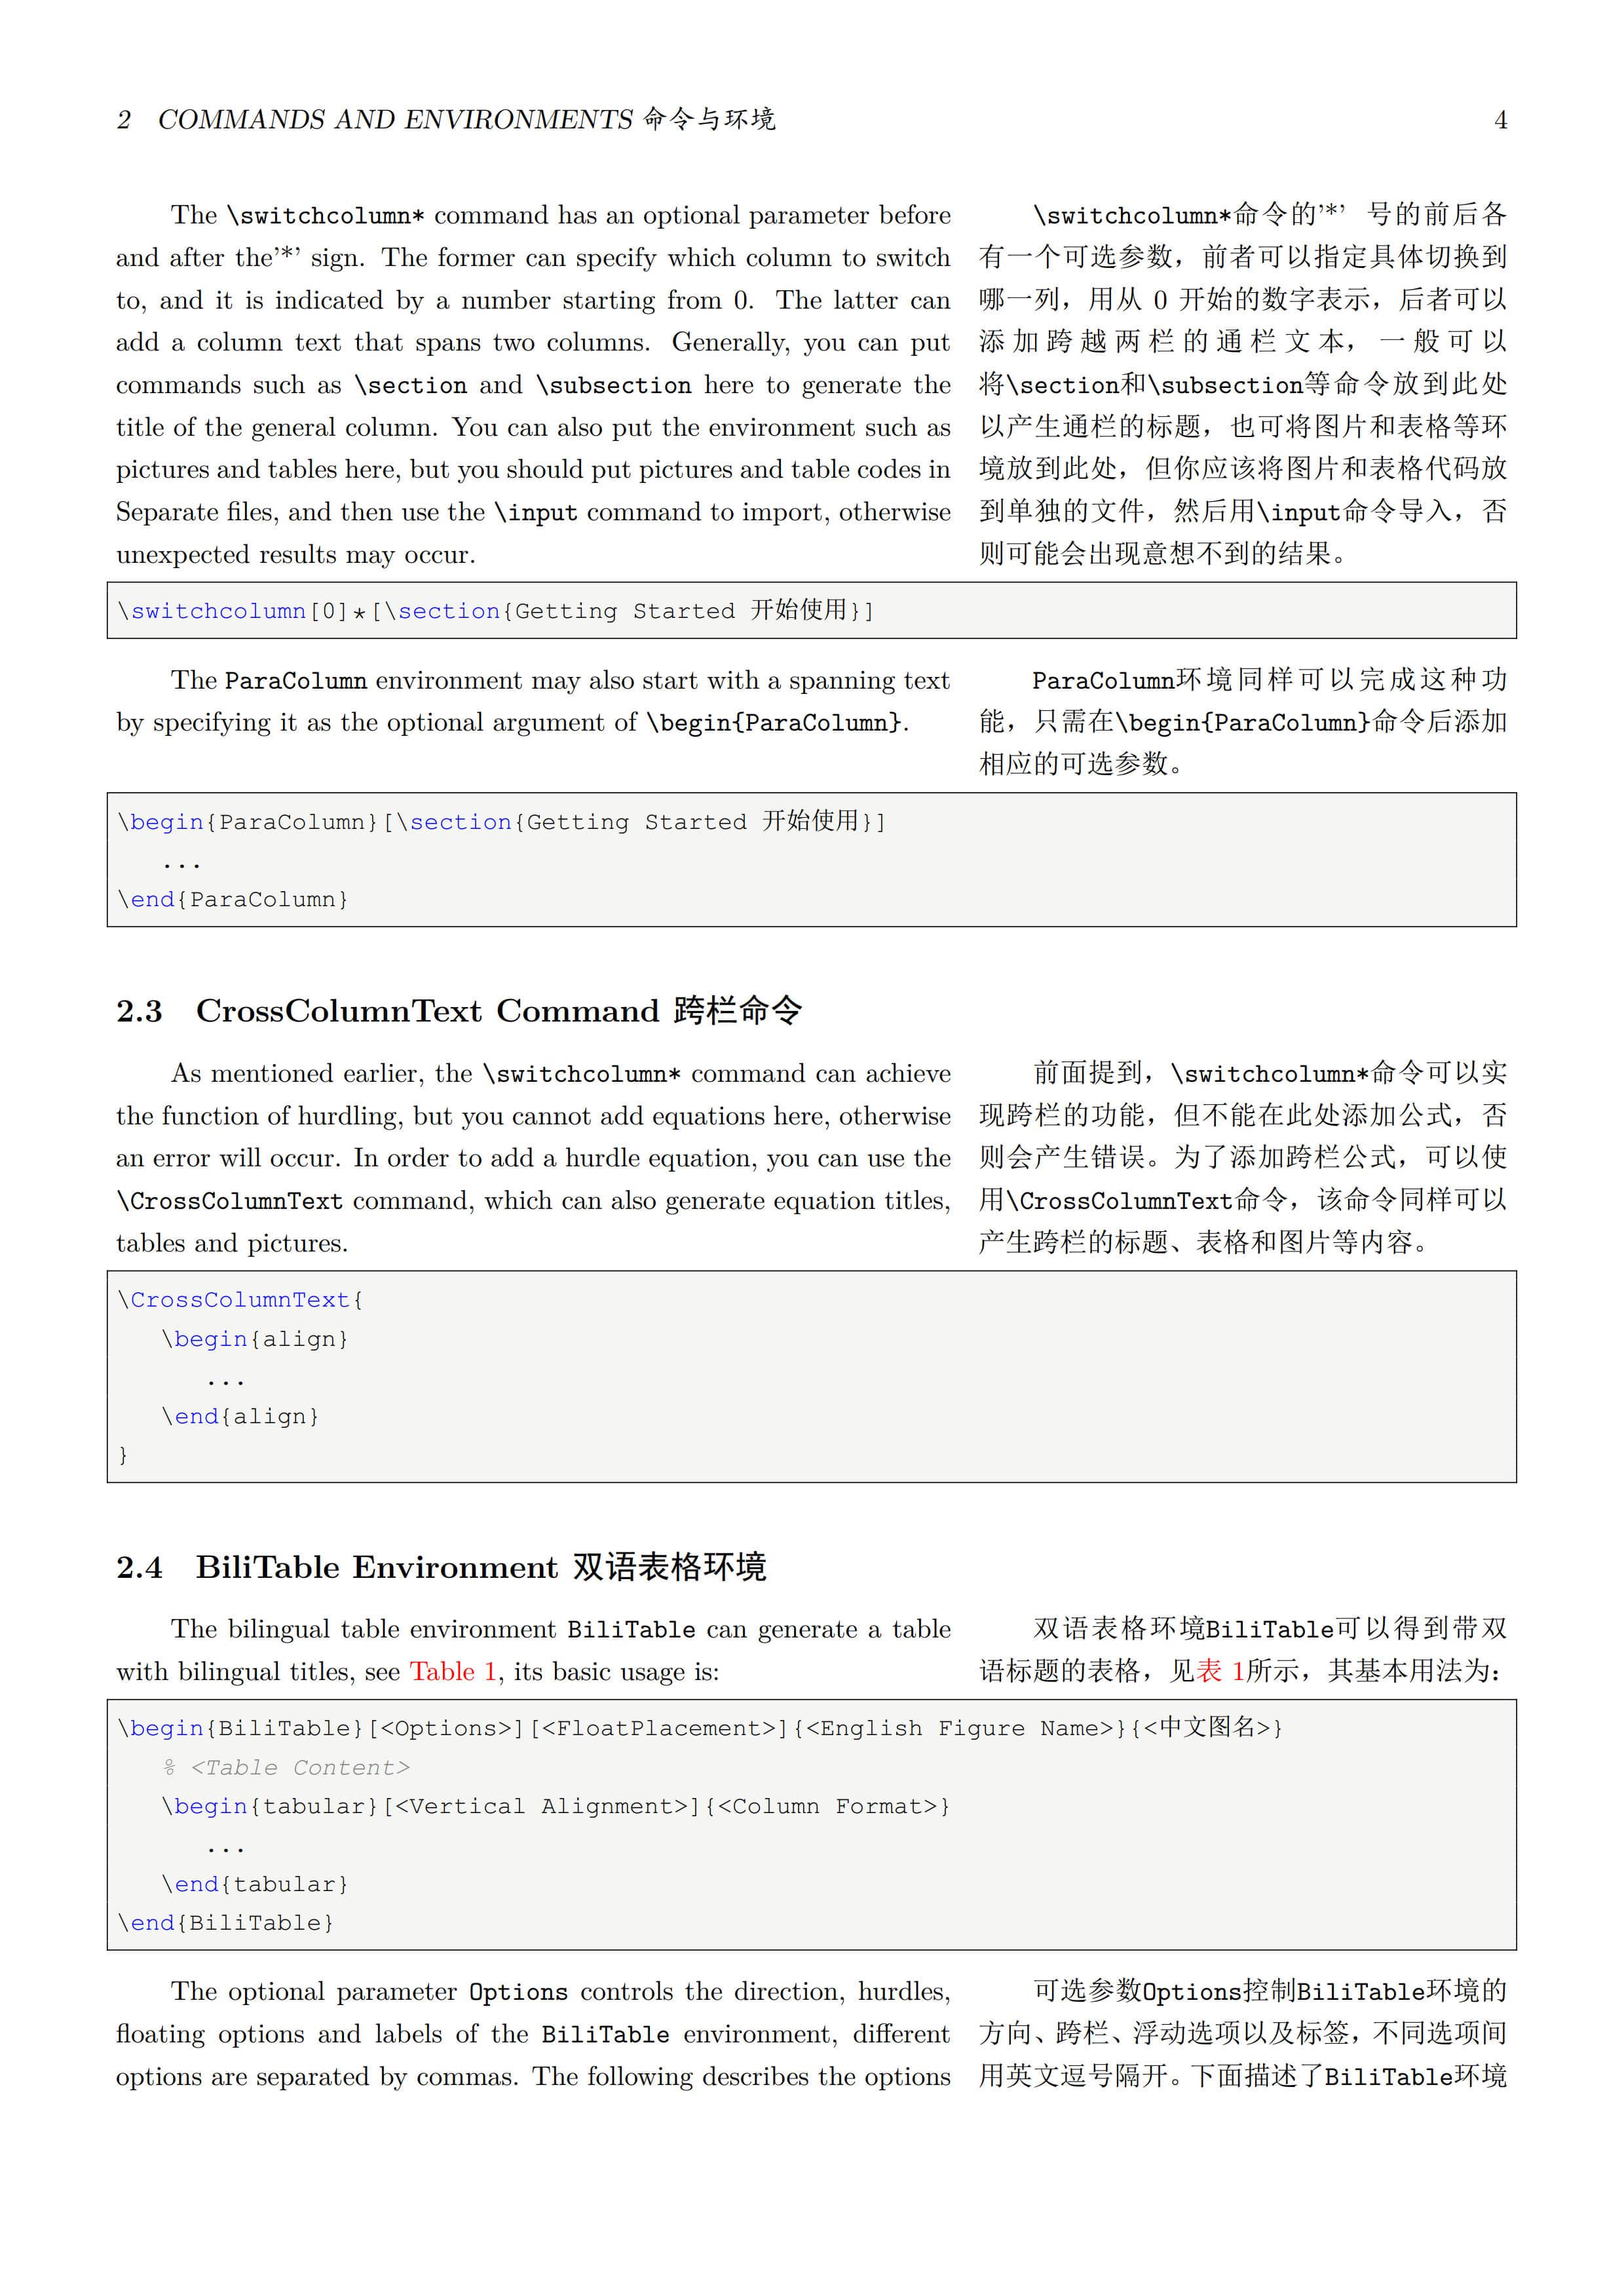 一个双语排版的文档类排版示例